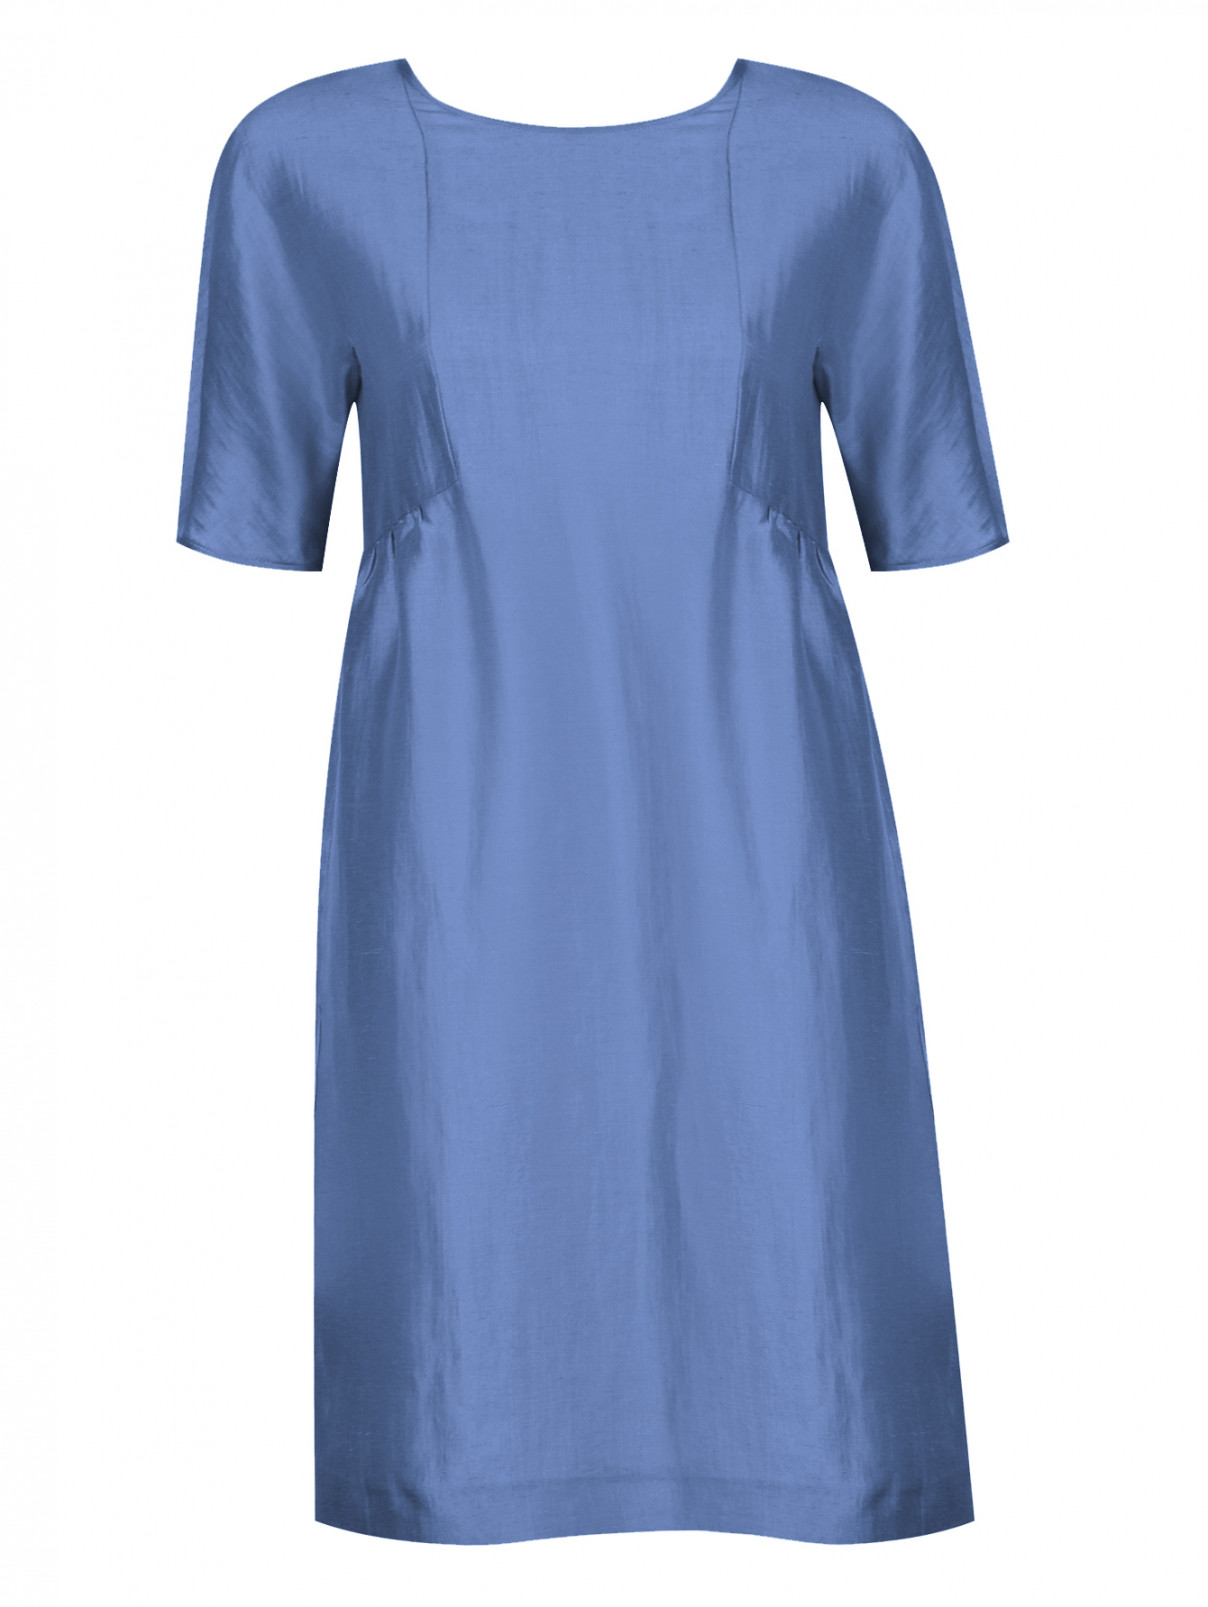 Платье из льна и шелка с короткими рукавами Weekend Max Mara  –  Общий вид  – Цвет:  Синий